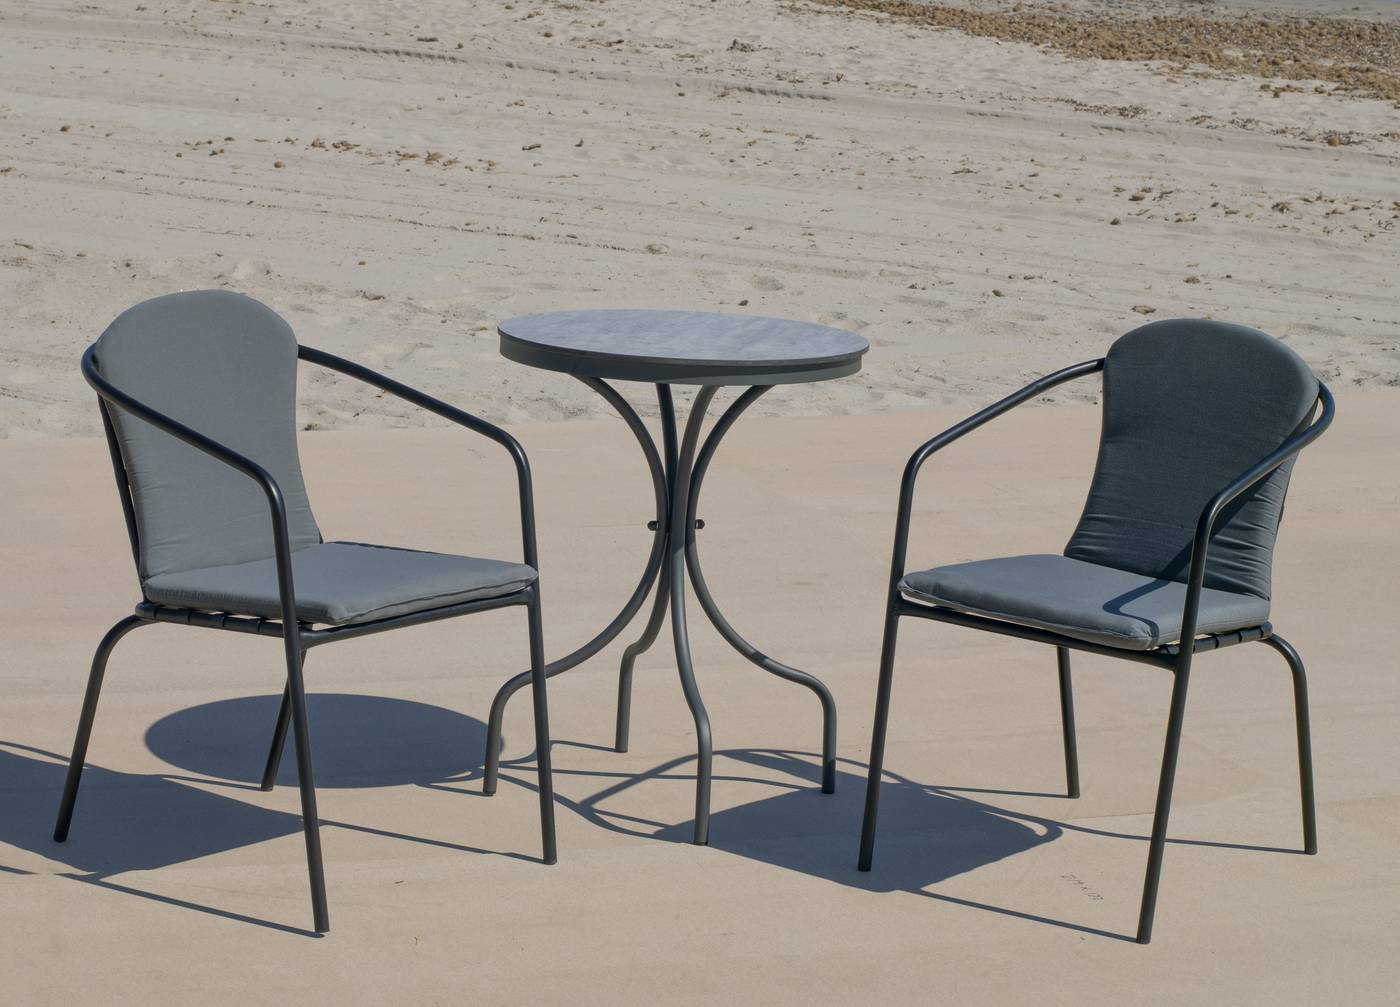 Conjunto aluminio color antracita: Mesa redonda con tablero HPL de 60 cm + 2 sillones con cojines.